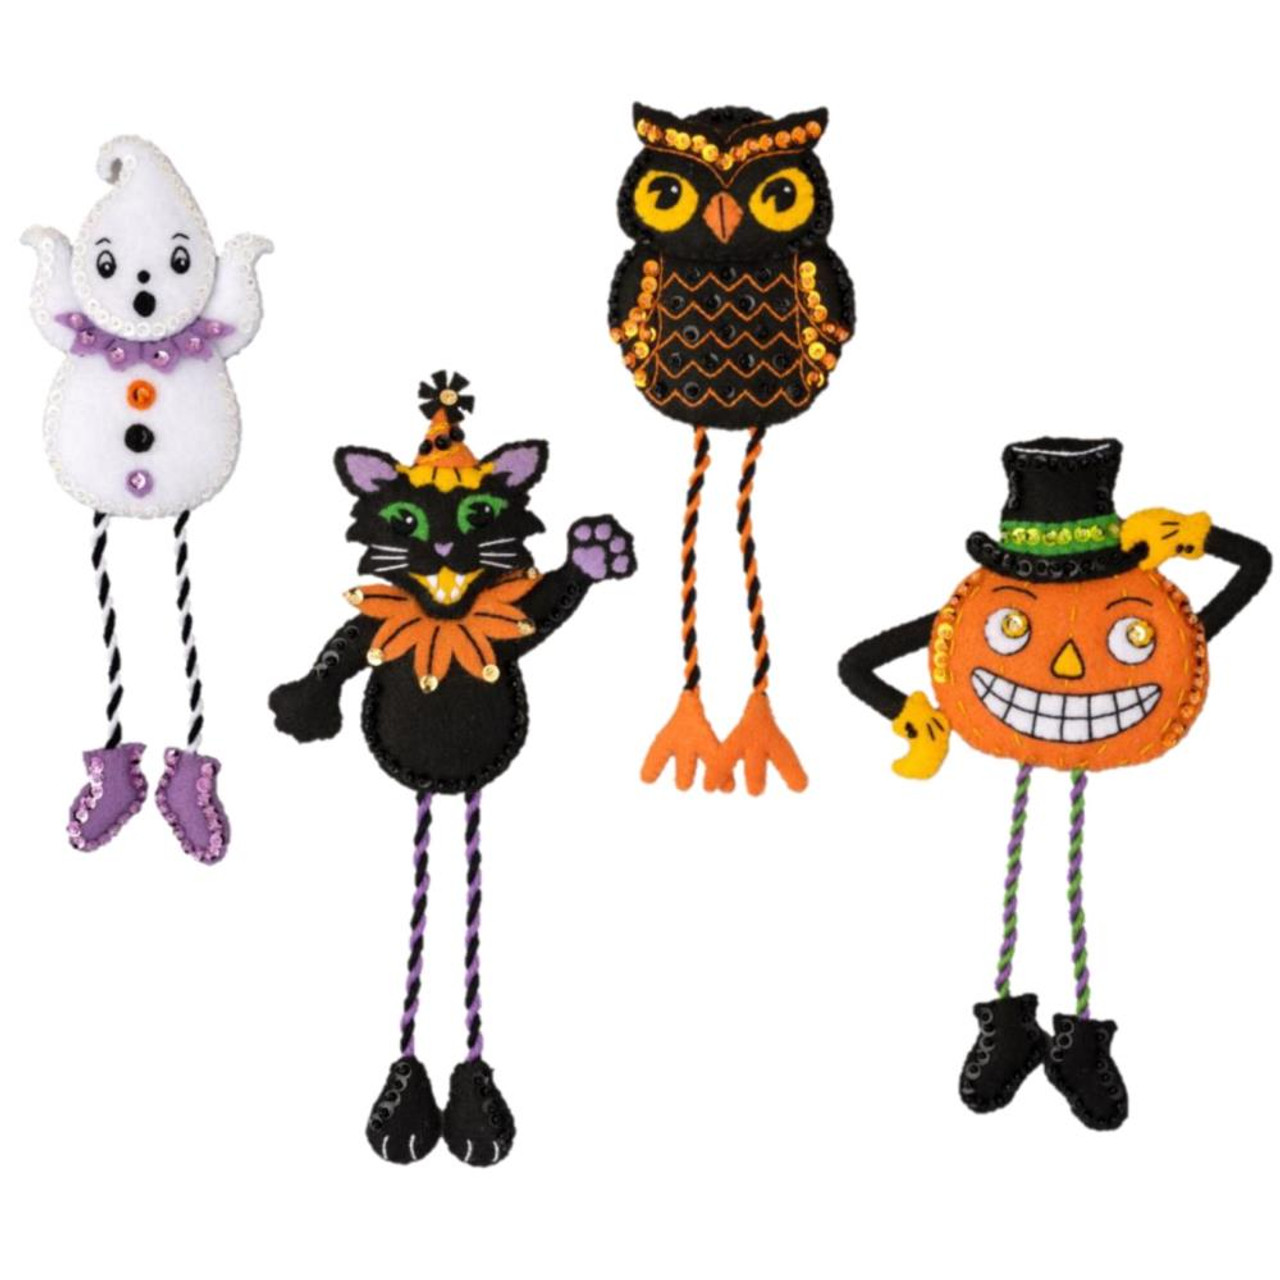 Bucilla Felt Applique Ornaments Kit Set Of 4, Halloween Squad